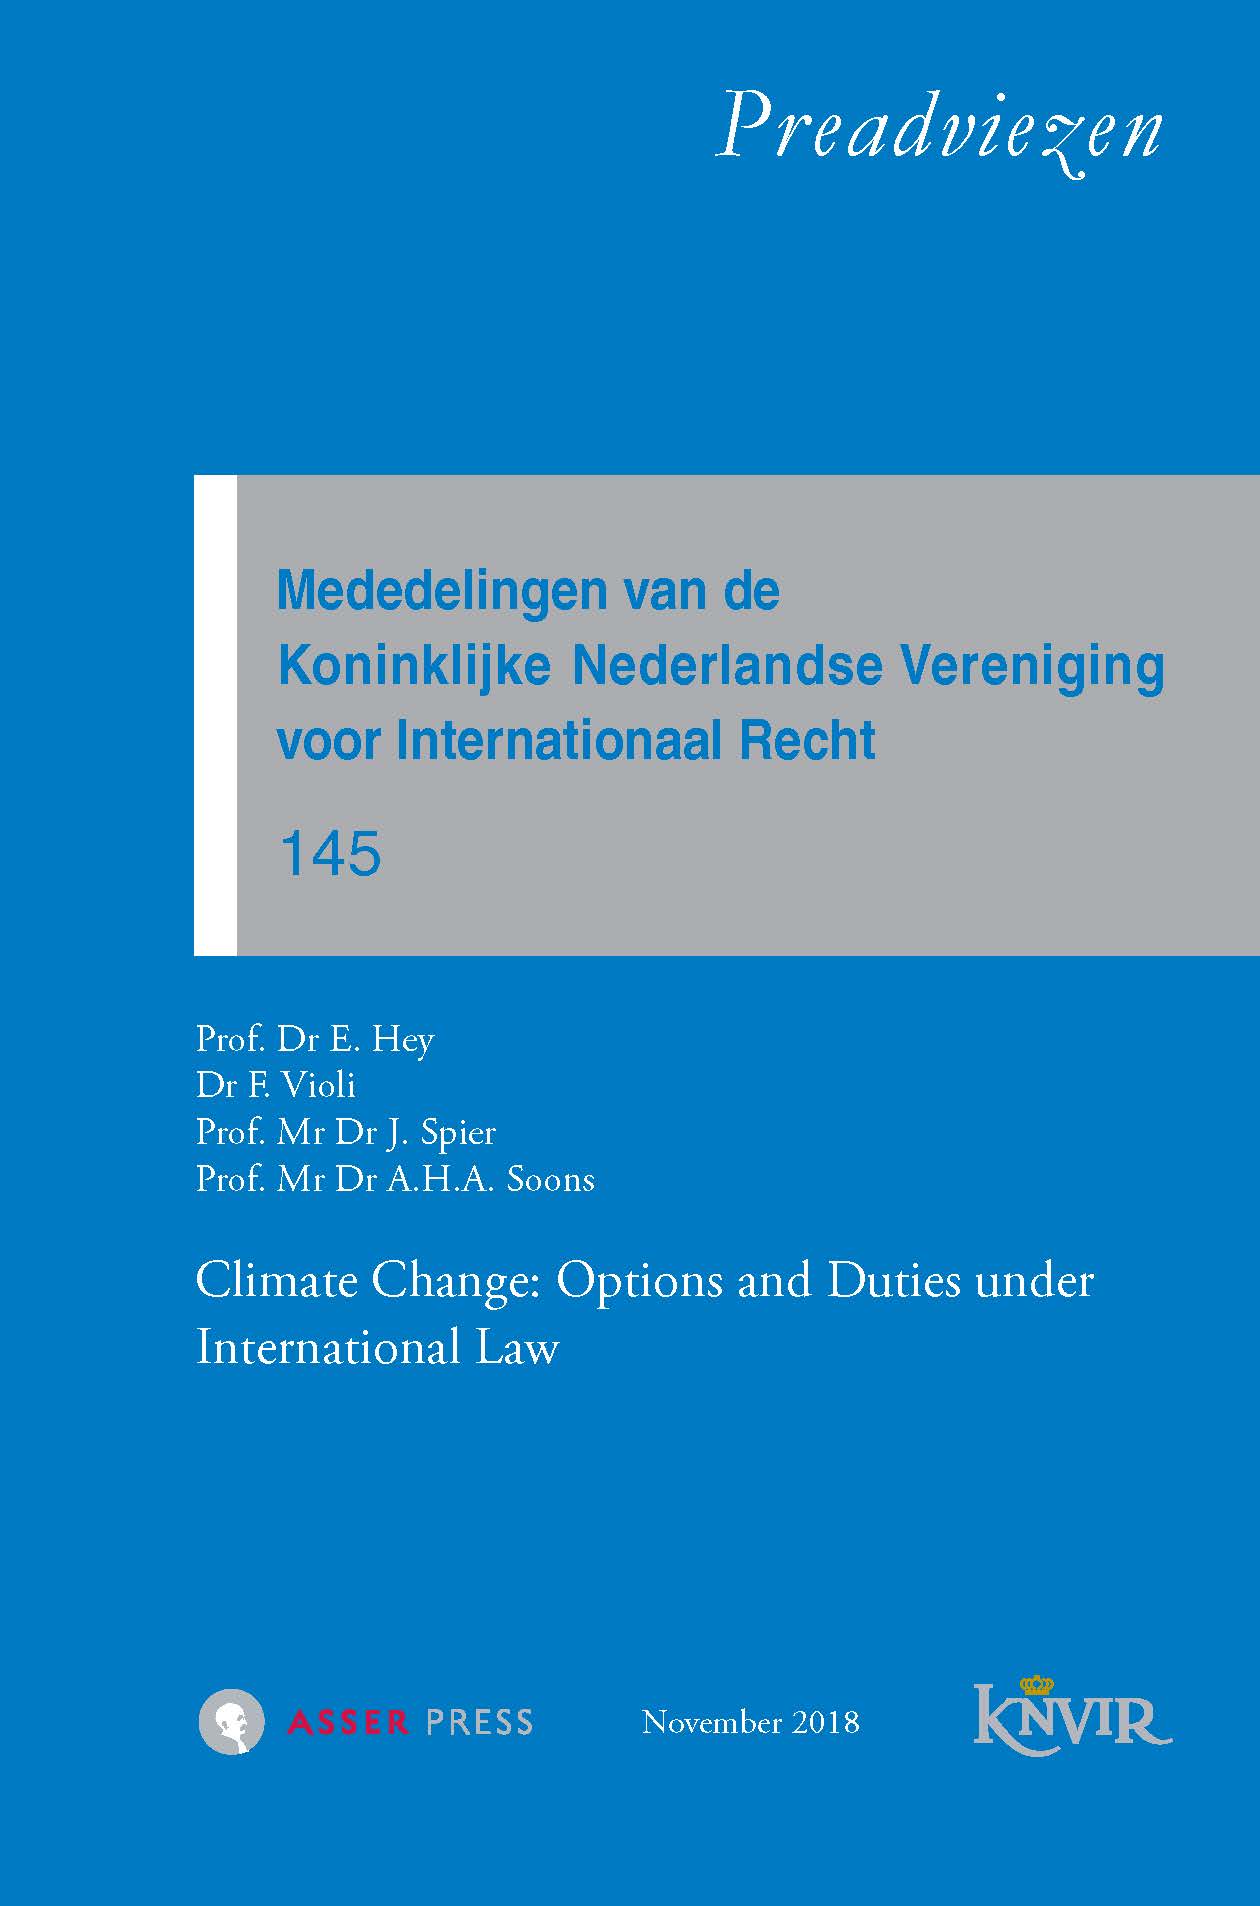 Mededelingen van de Koninklijke Nederlandse Vereniging voor Internationaal Recht - nr 145 – Climate Change: Options and Duties under International Law